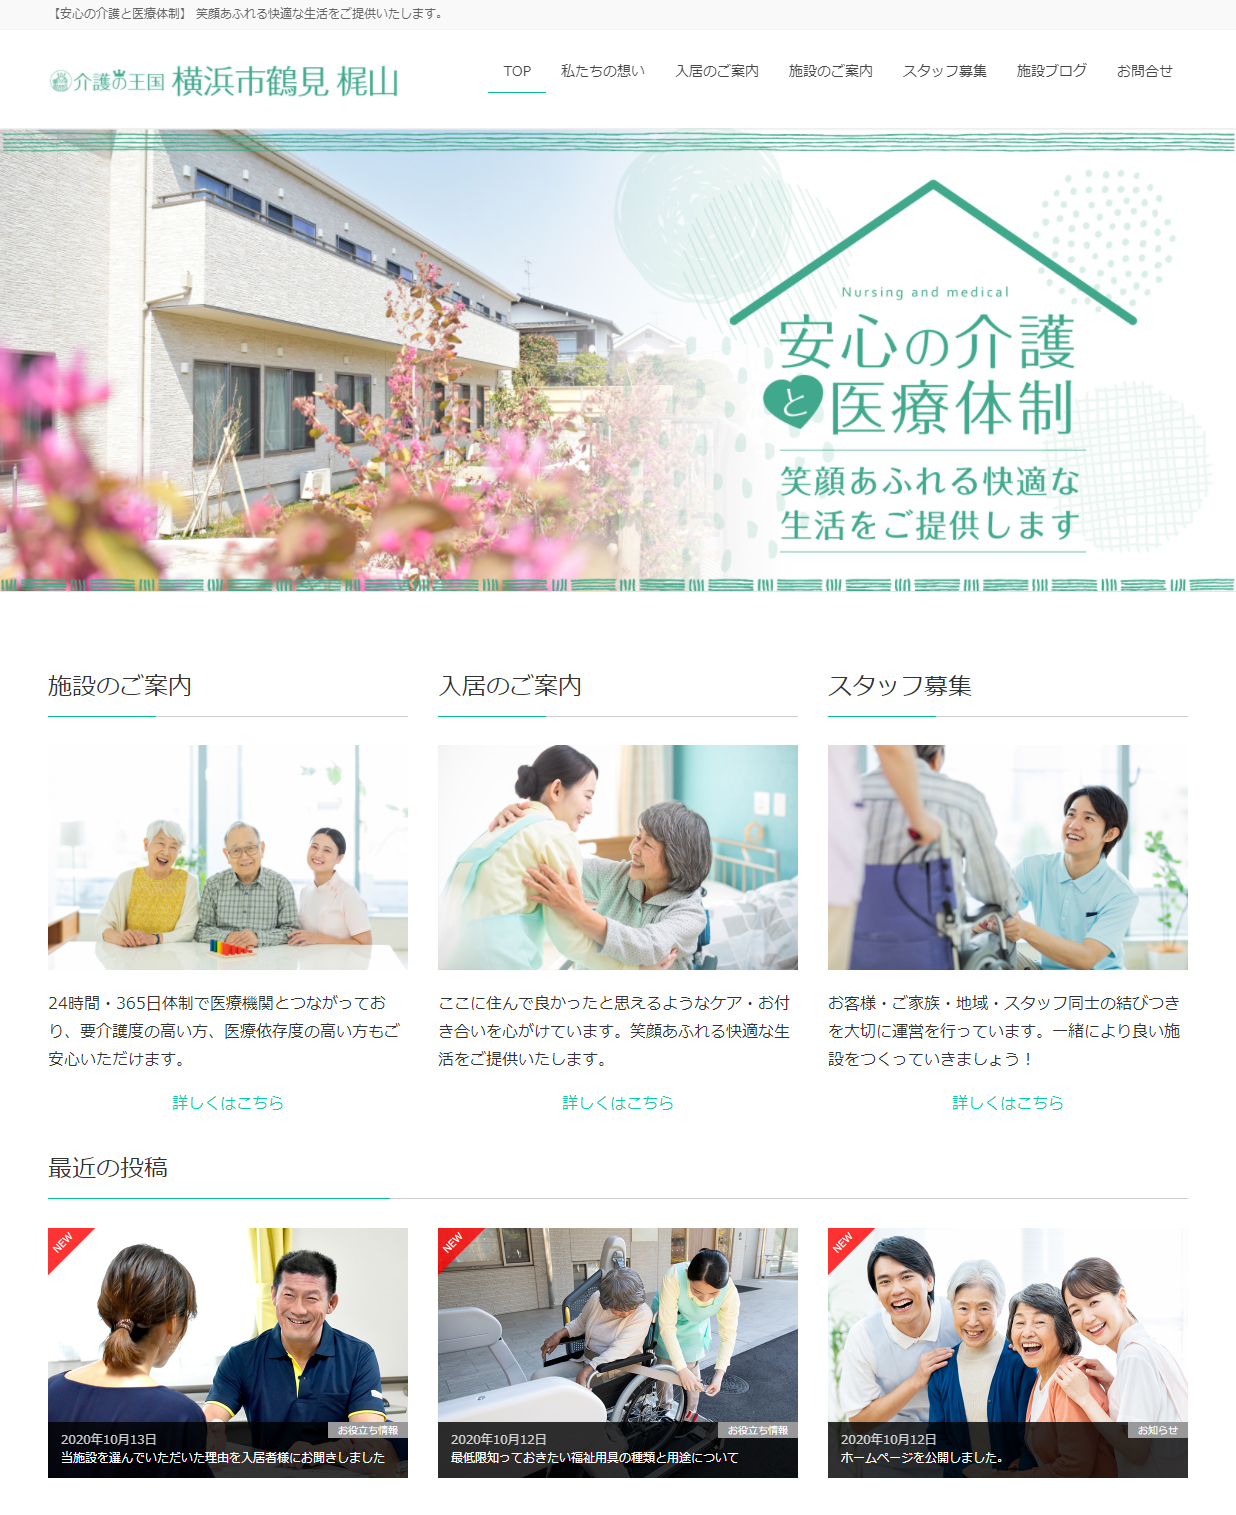 私たちの直営施設 住宅型有料老人ホーム 介護の王国 横浜市鶴見 梶山のホームページを公開しました 事業性と社会性を両立したコンパクトな老人ホーム 介護の王国